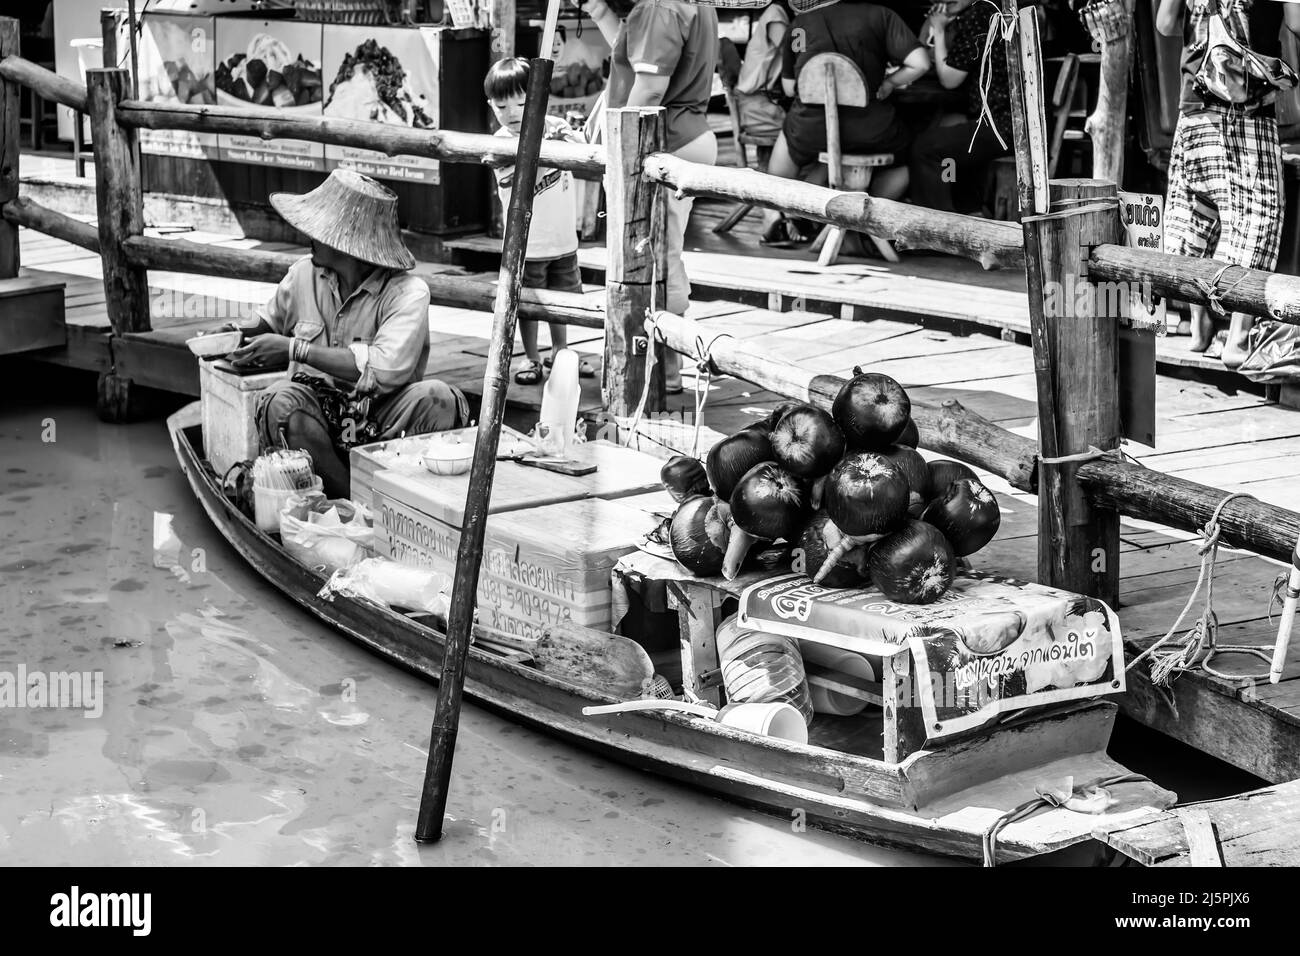 Pattaya, Thailandia - 6 dicembre 2009: Venditore in barca al mercato galleggiante di Pattaya che vende latte di cocco. Fotografia in bianco e nero Foto Stock